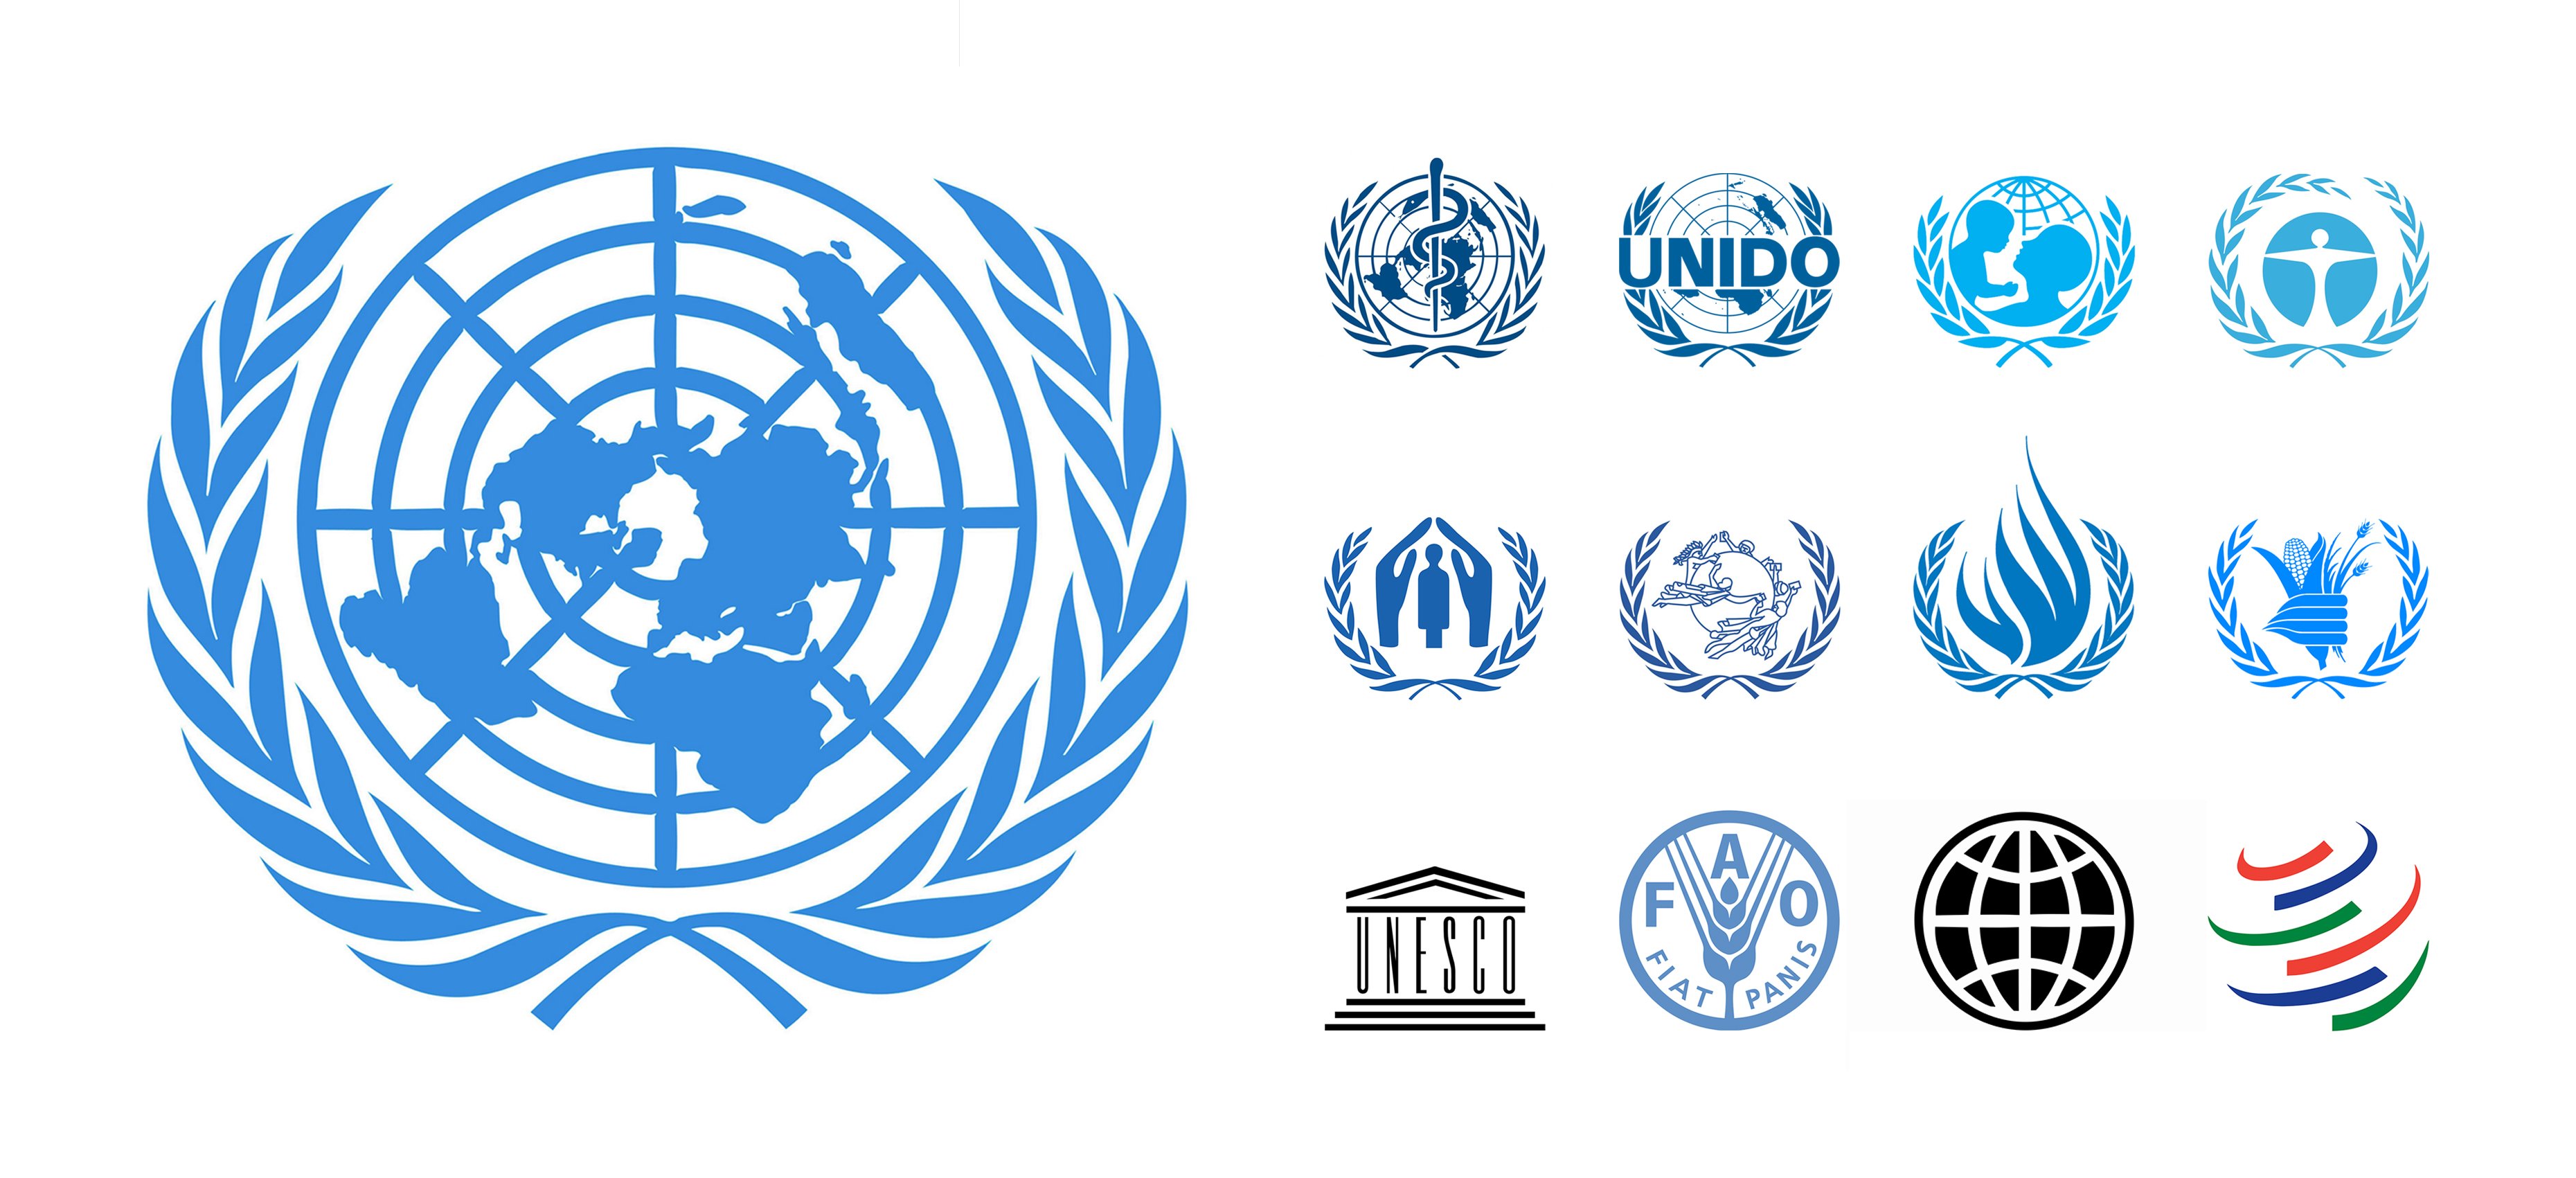 Три международных организаций. Организация Объединенных наций ЮНЕСКО. Лого организация Объединенных наций (ООН). Символика международных организаций. Международные организациилого.